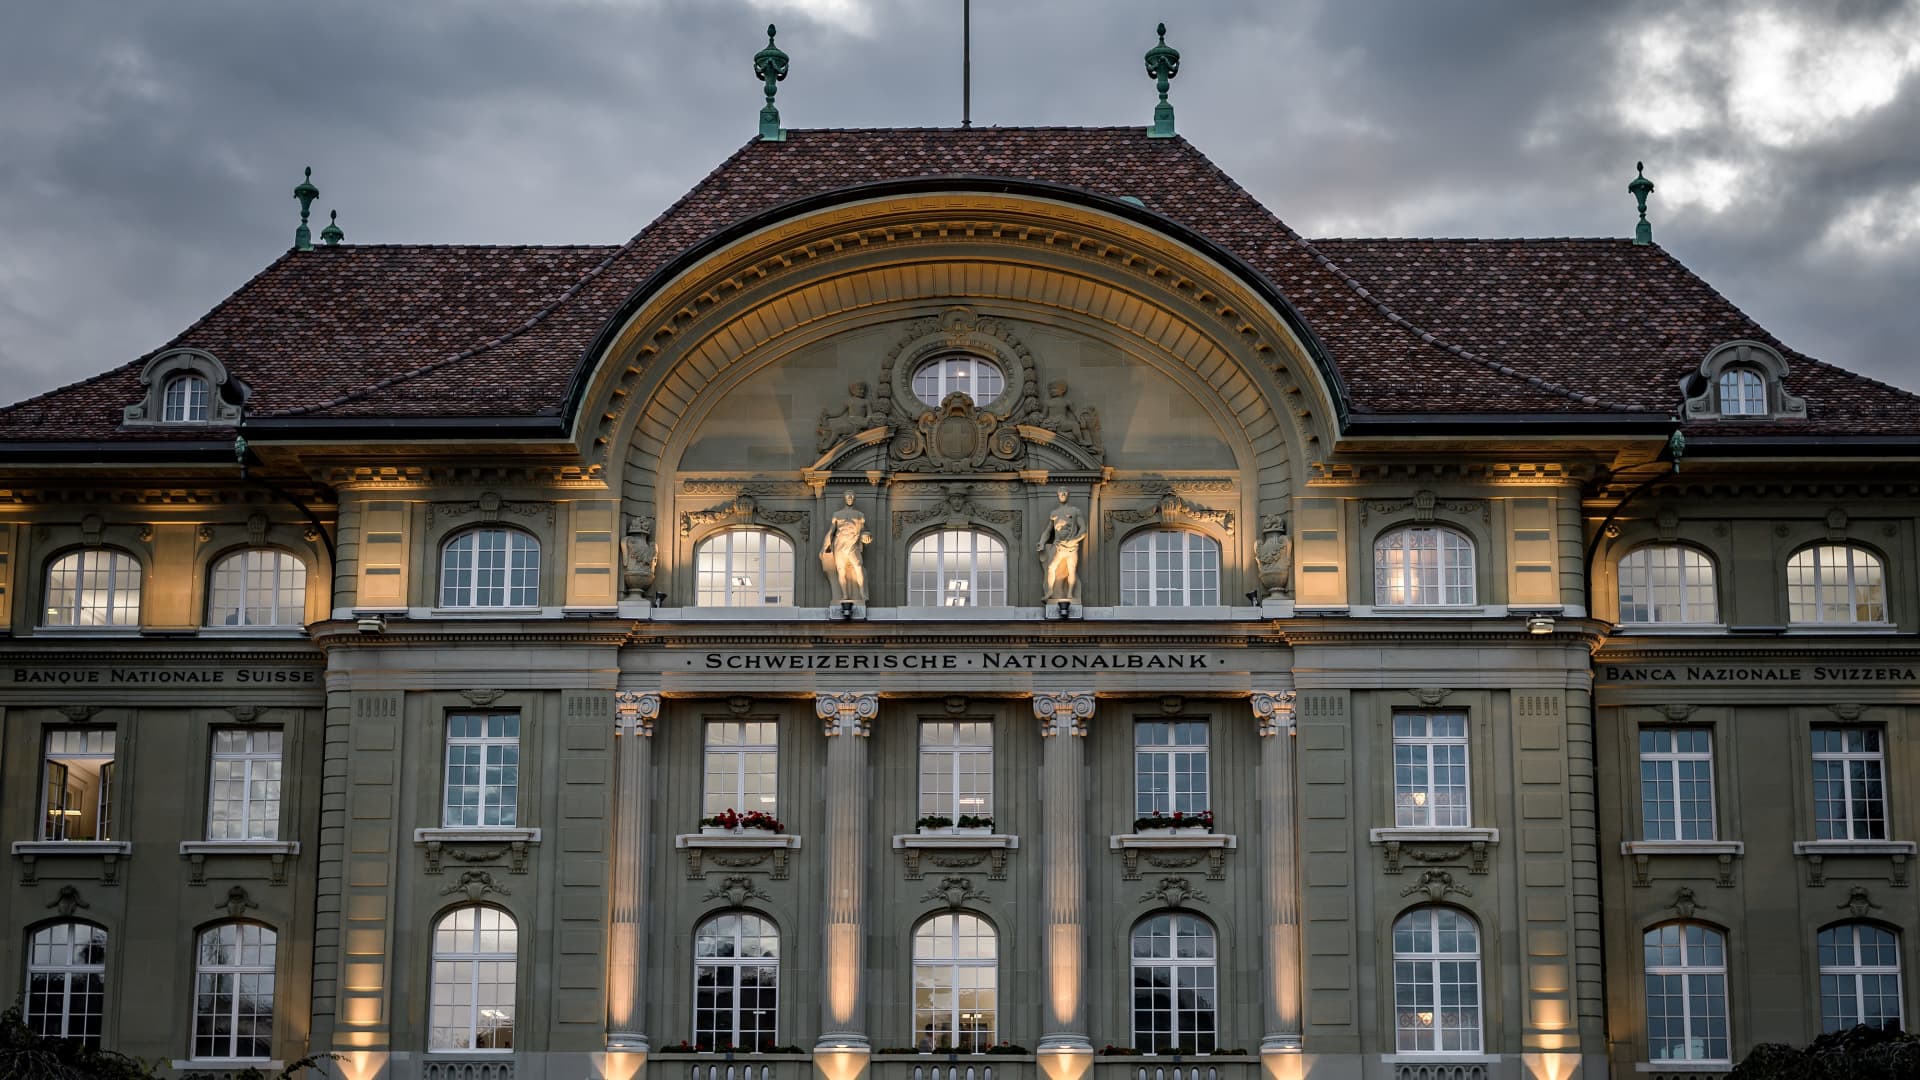 البنك المركزي السويسري يرفع سعر الفائدة حيث تضررت بشدة ضغوط التضخم